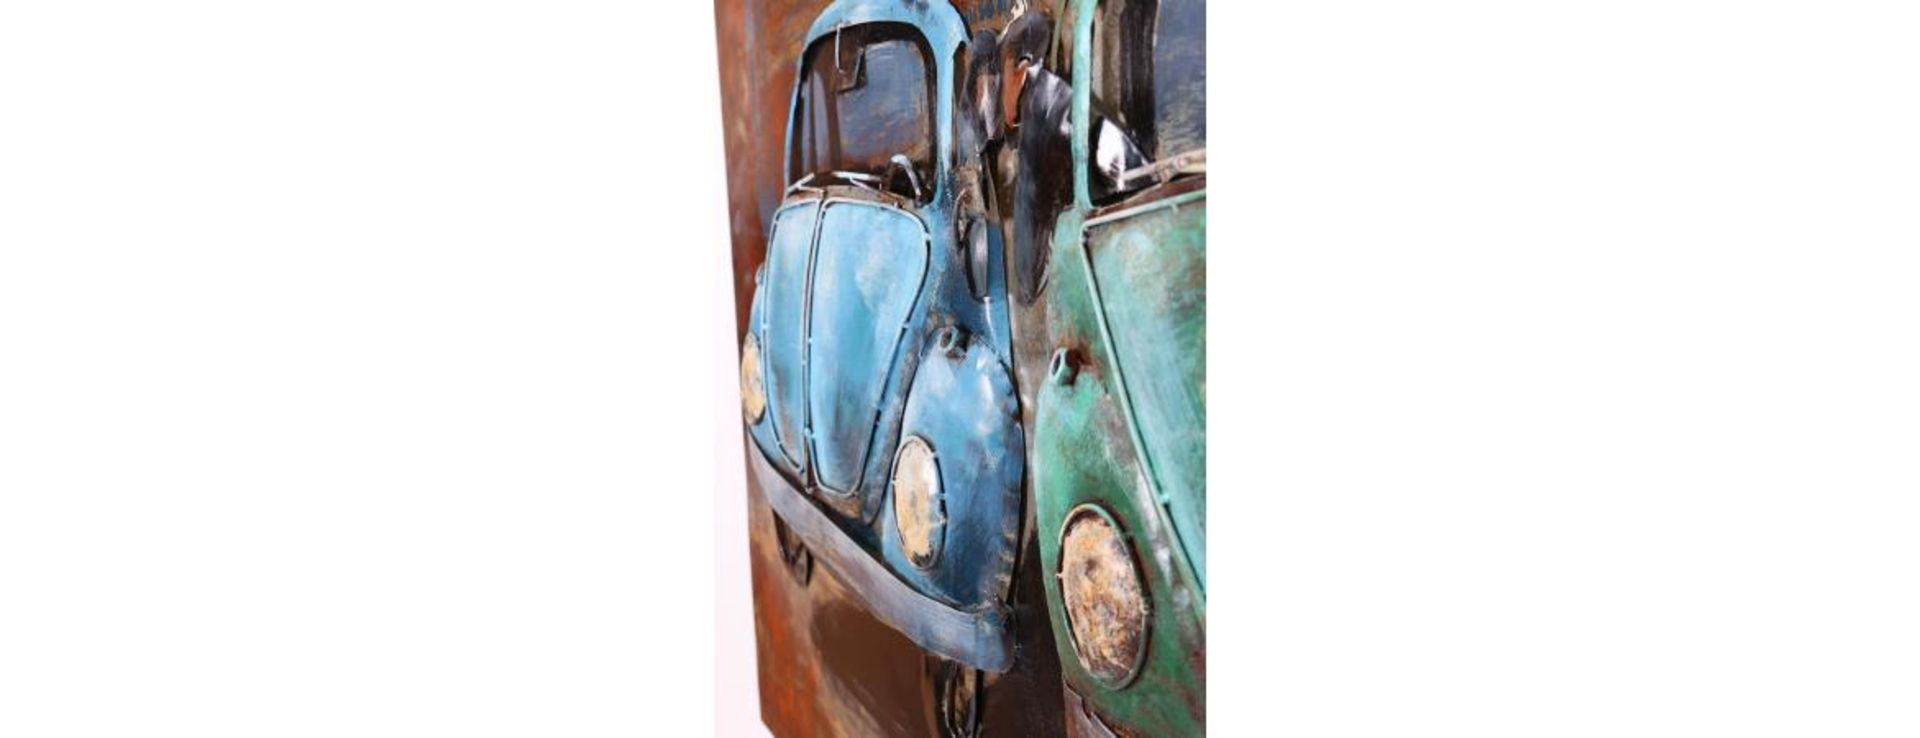 3D Metal VW Beetles Painting - Image 3 of 9